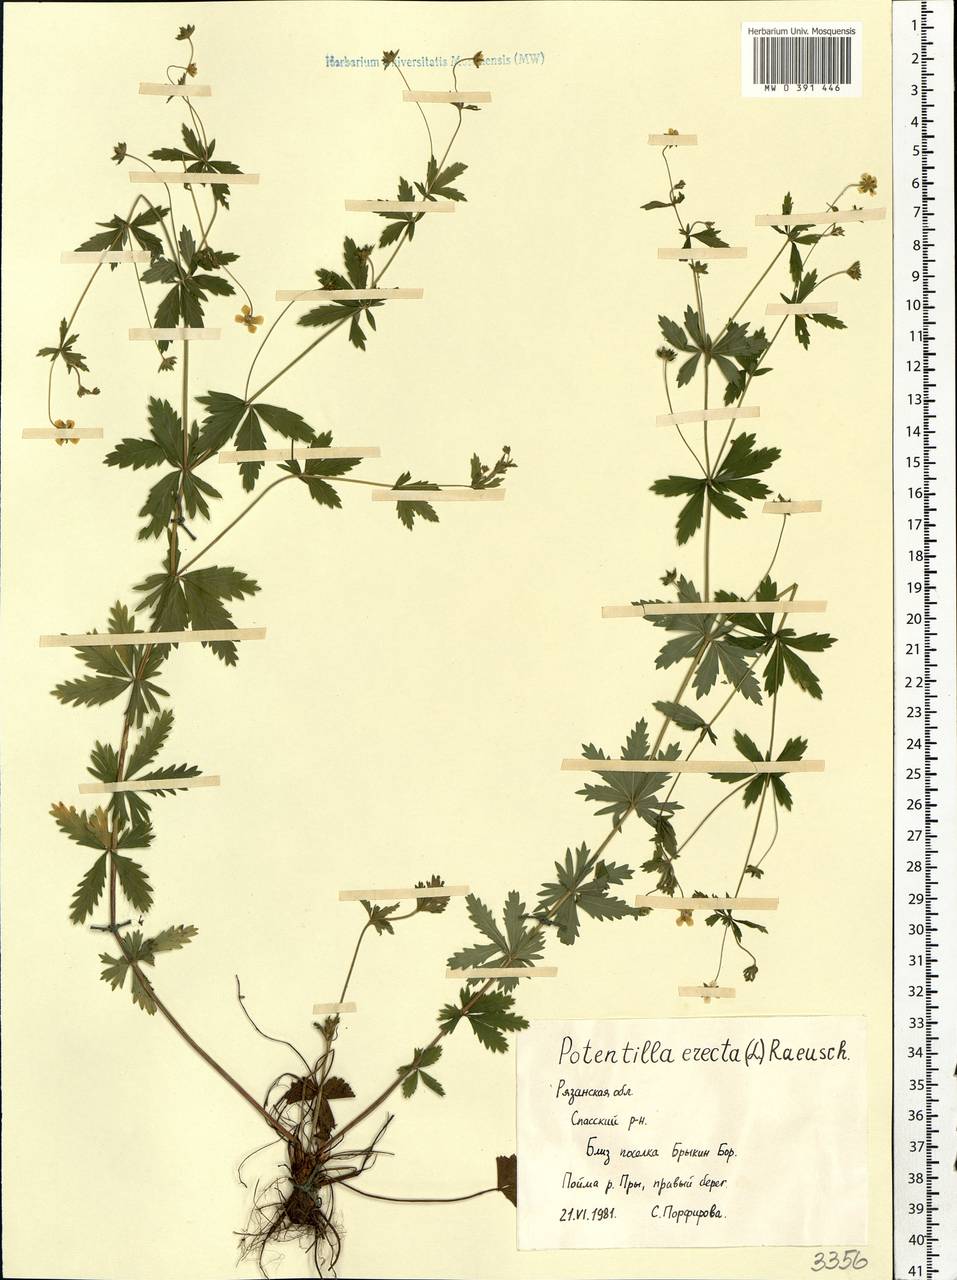 Potentilla erecta (L.) Raeusch., Eastern Europe, Central region (E4) (Russia)